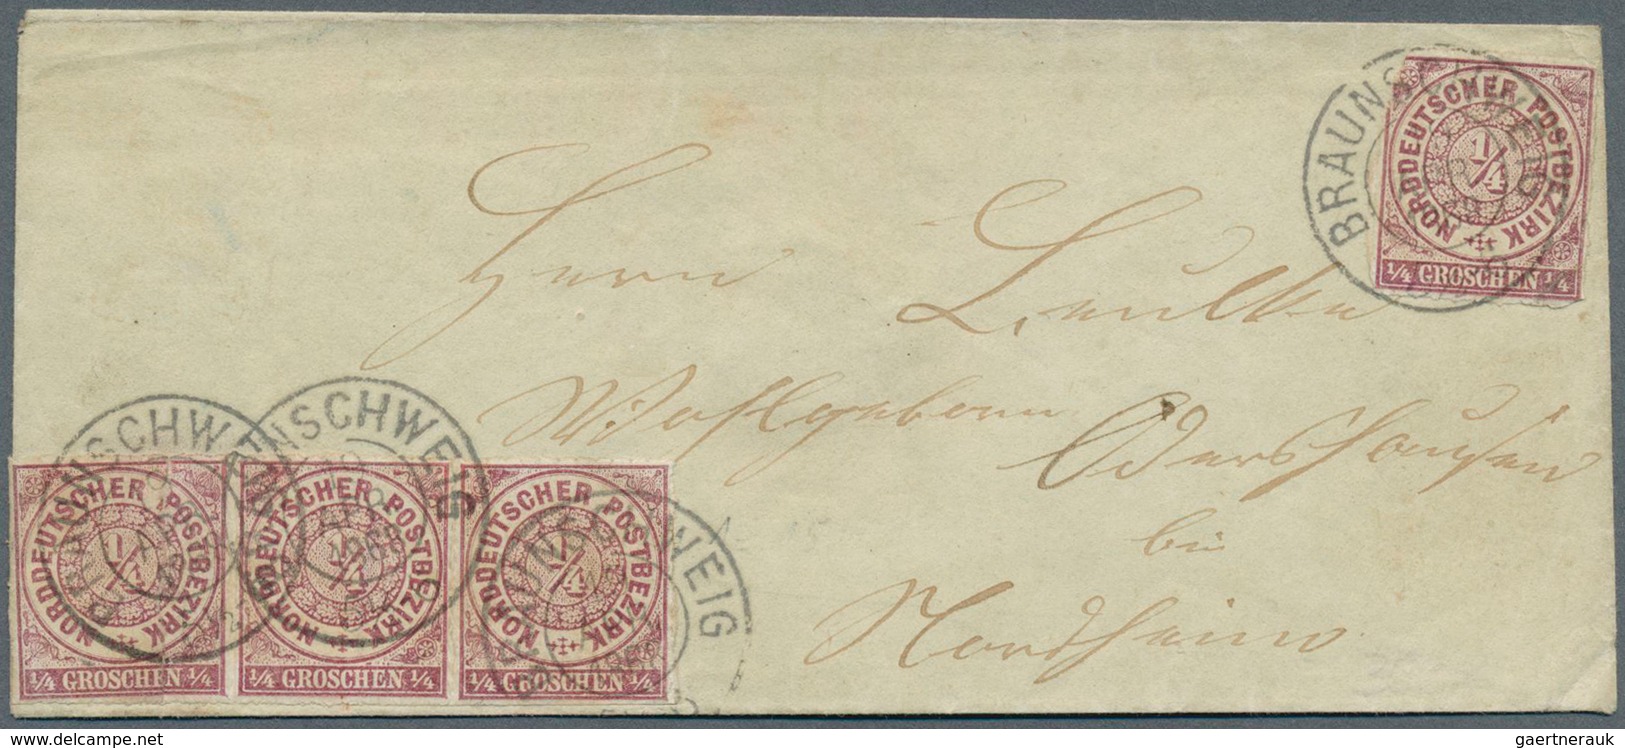 31386 Norddeutscher Bund - Marken und Briefe: 1868/1871, reichhaltige Sammlung mit besseren und guten Wert